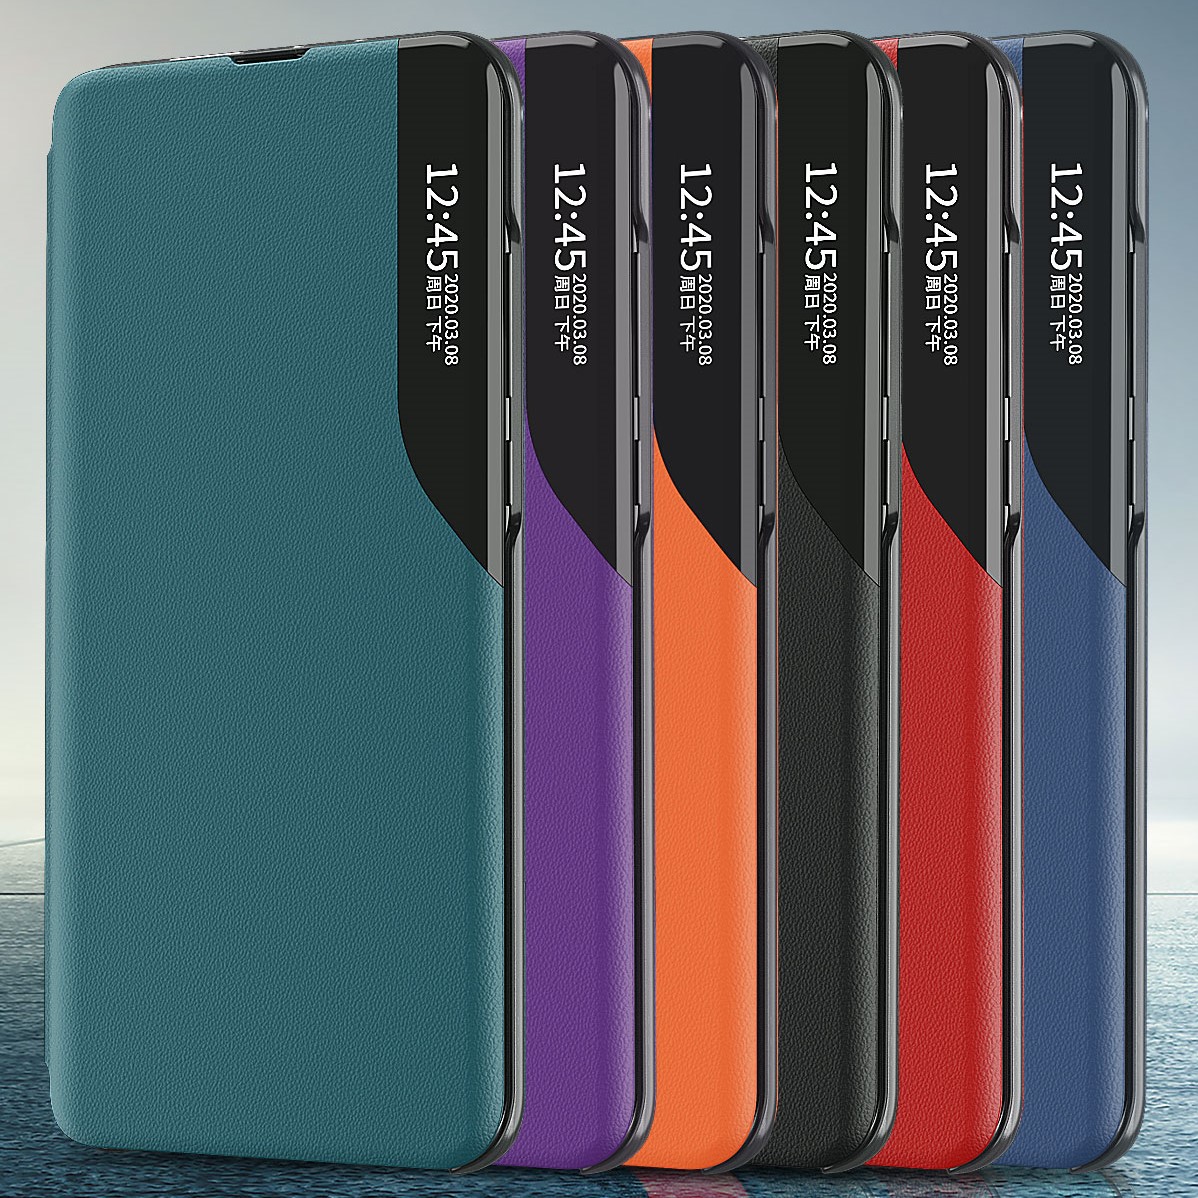 Bao Da Điện Thoại Nắp Lật Từ Tính Tự Động Tắt / Mở Thông Minh Cho Xiaomi Redmi 9 9a 9c 9t Redmi Note 9 Pro Max Note 9s Redmi 9t 10x 4g Ốp